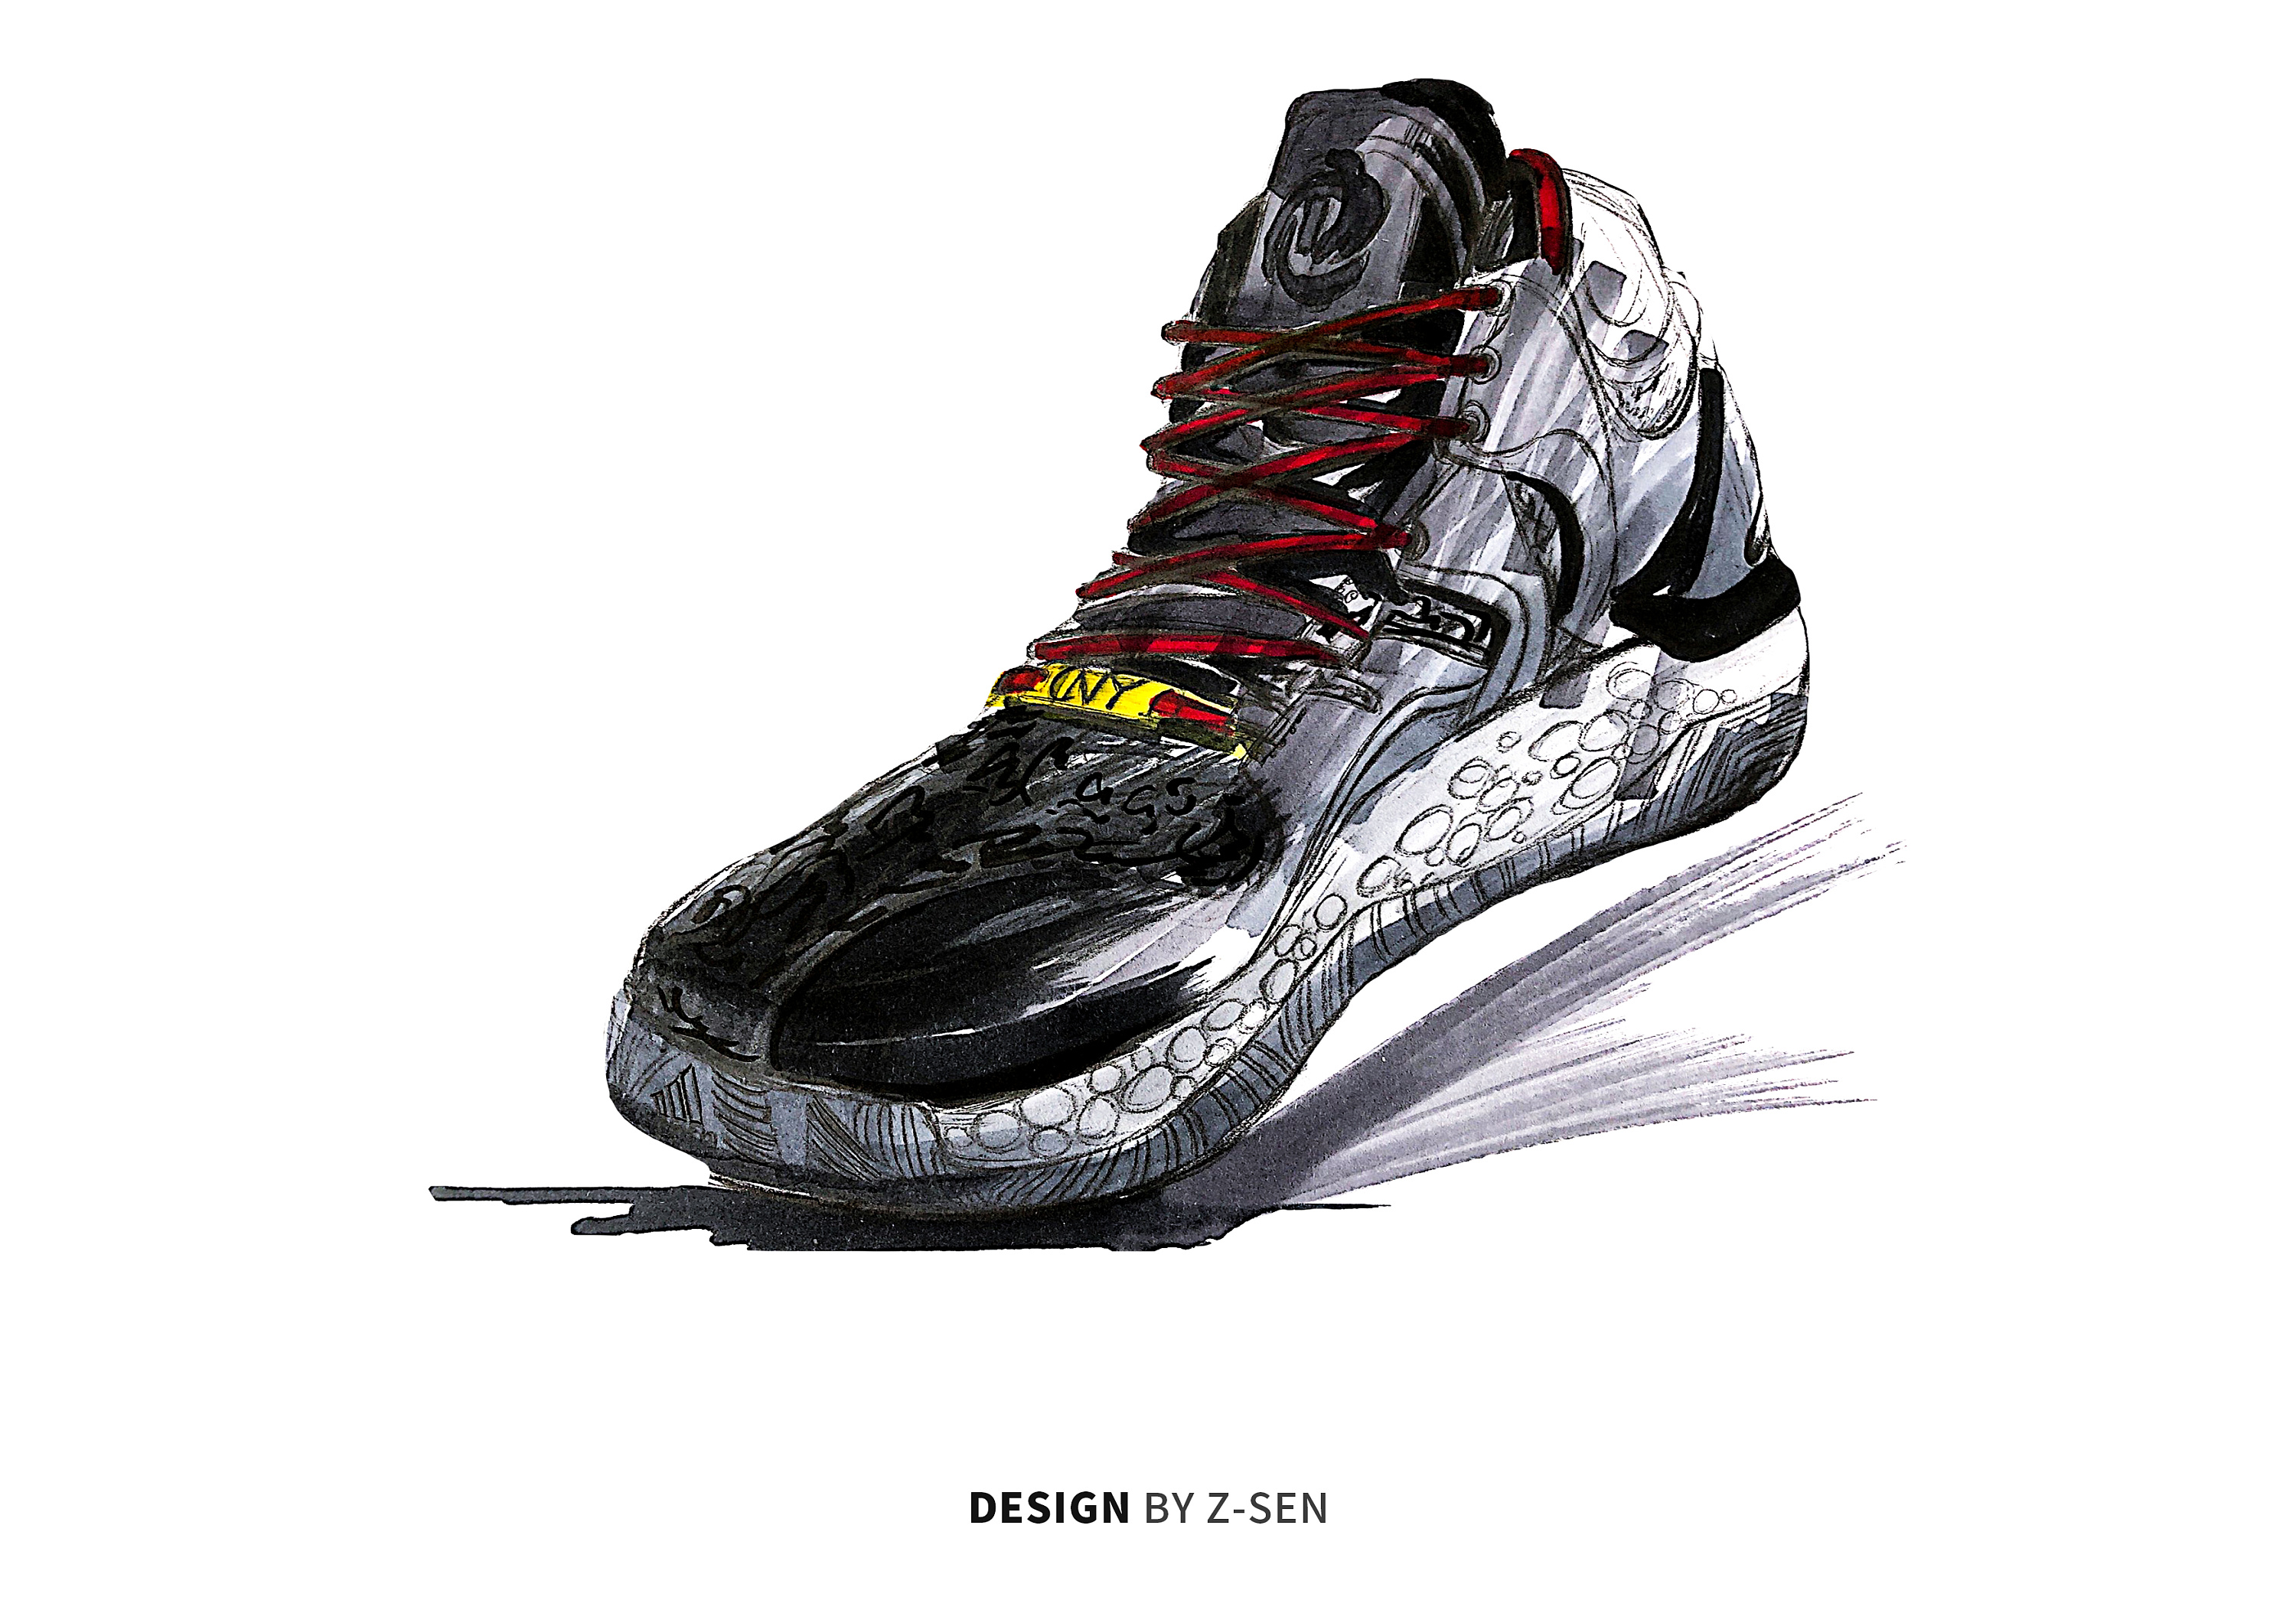 3D打印在鞋模手板设计上的应用 - 杭州博型科技有限公司